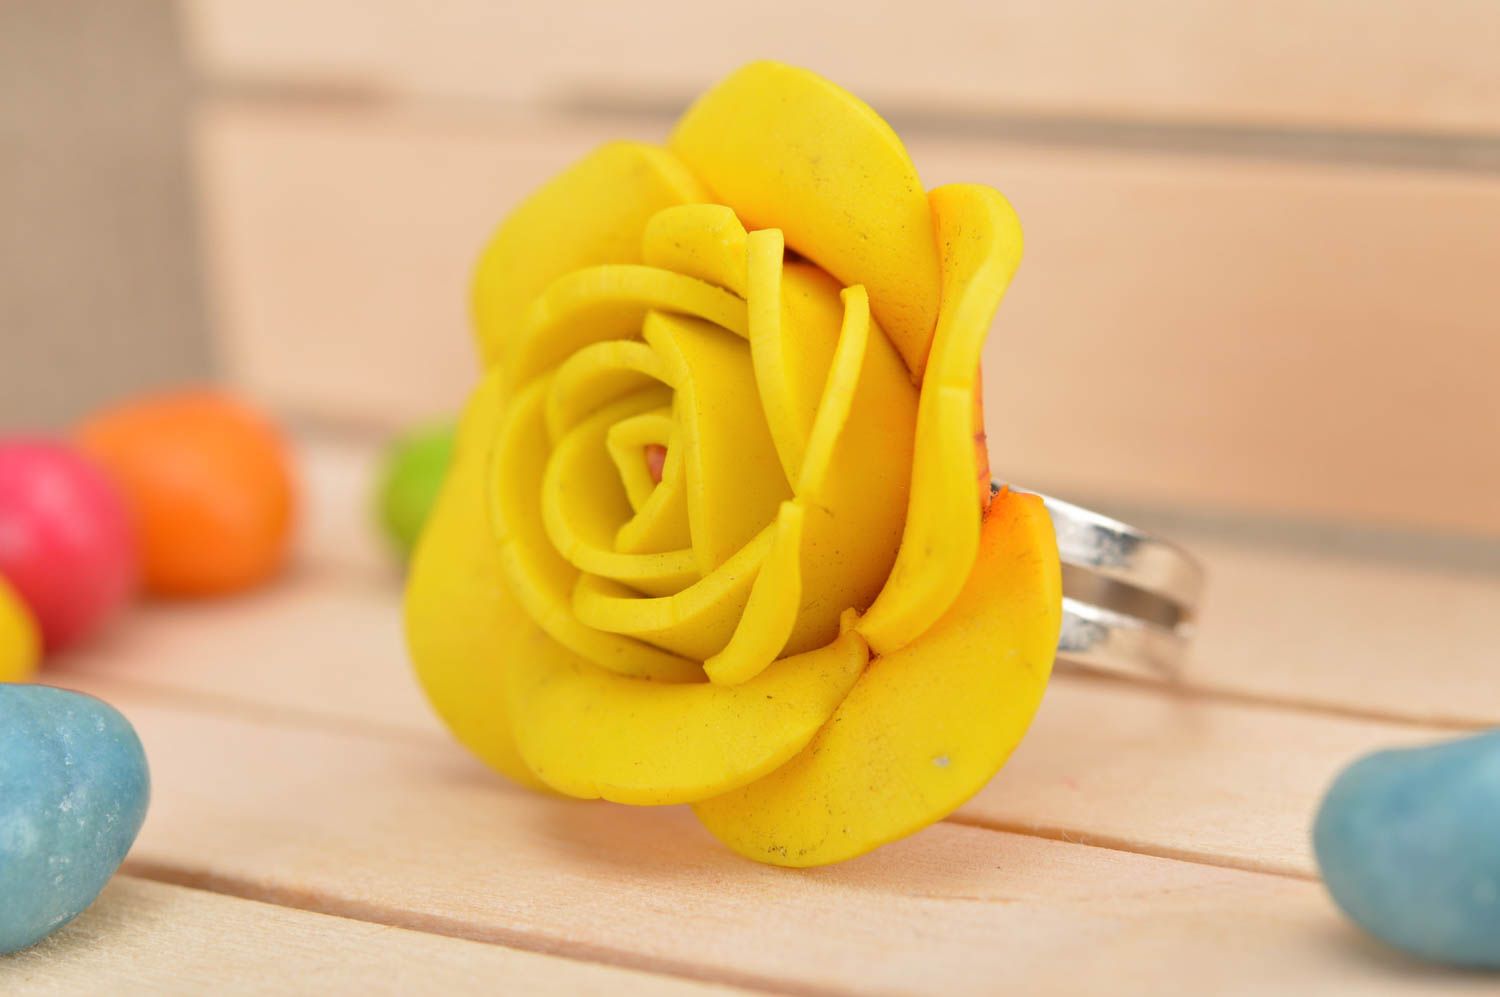 Кольцо из полимерной глины в виде объемной желтой розы ручной работы авторское фото 1